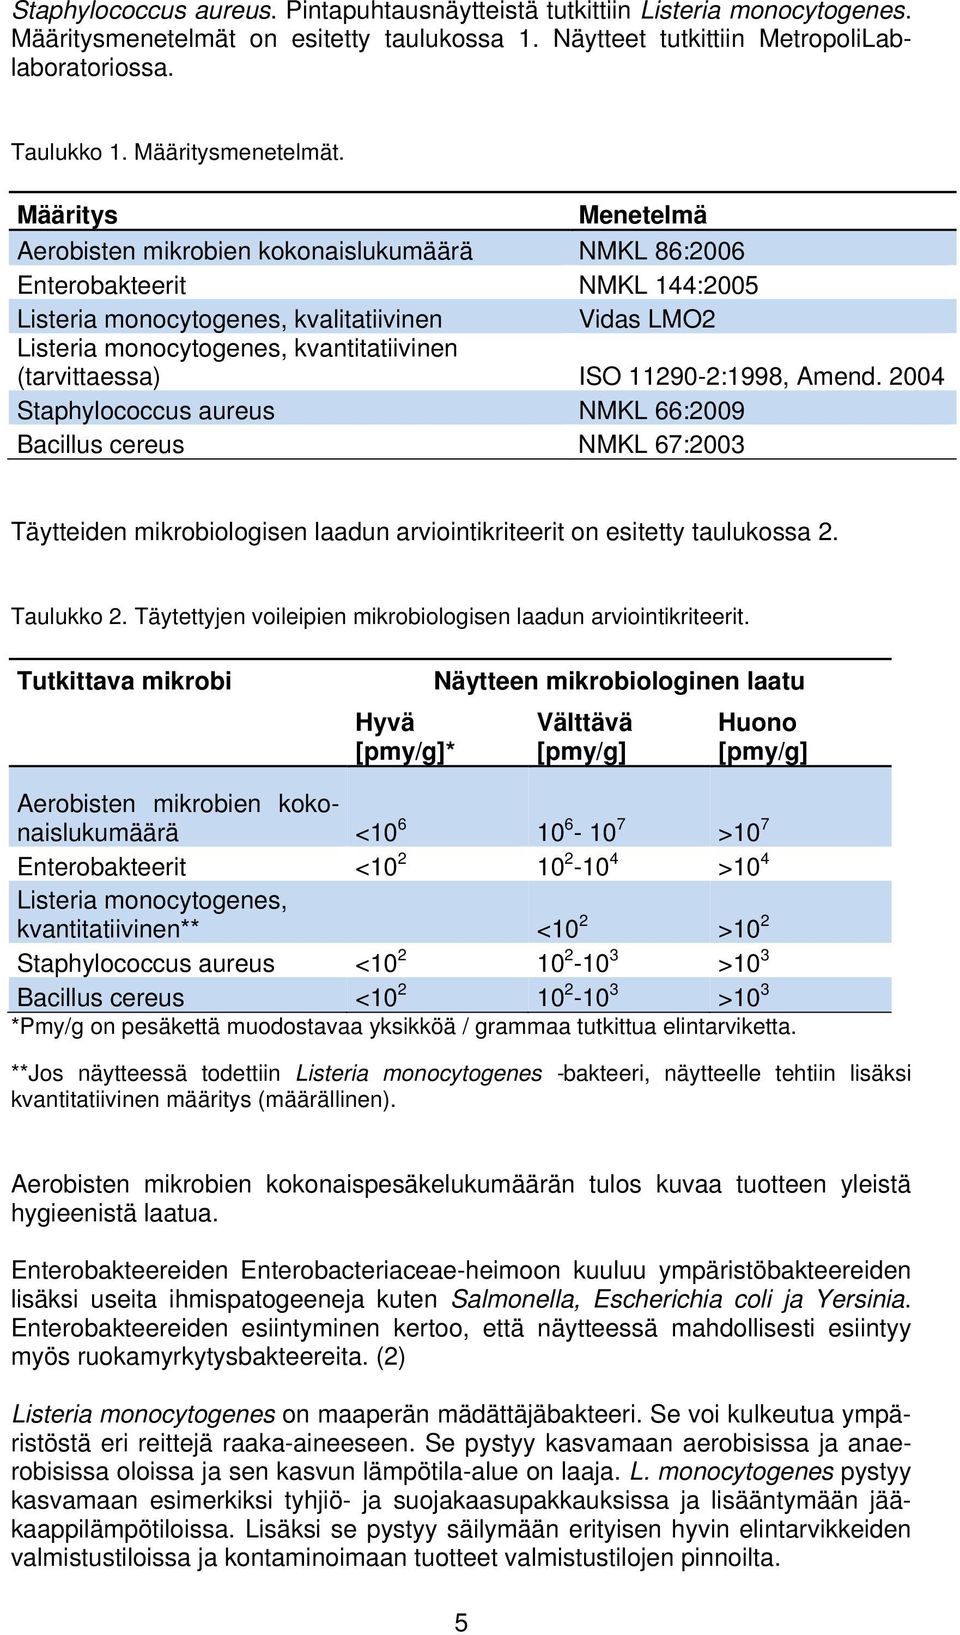 Määritys Menetelmä Aerobisten mikrobien kokonaislukumäärä NMKL 86:2006 Enterobakteerit NMKL 144:2005 Listeria monocytogenes, kvalitatiivinen Vidas LMO2 Listeria monocytogenes, kvantitatiivinen